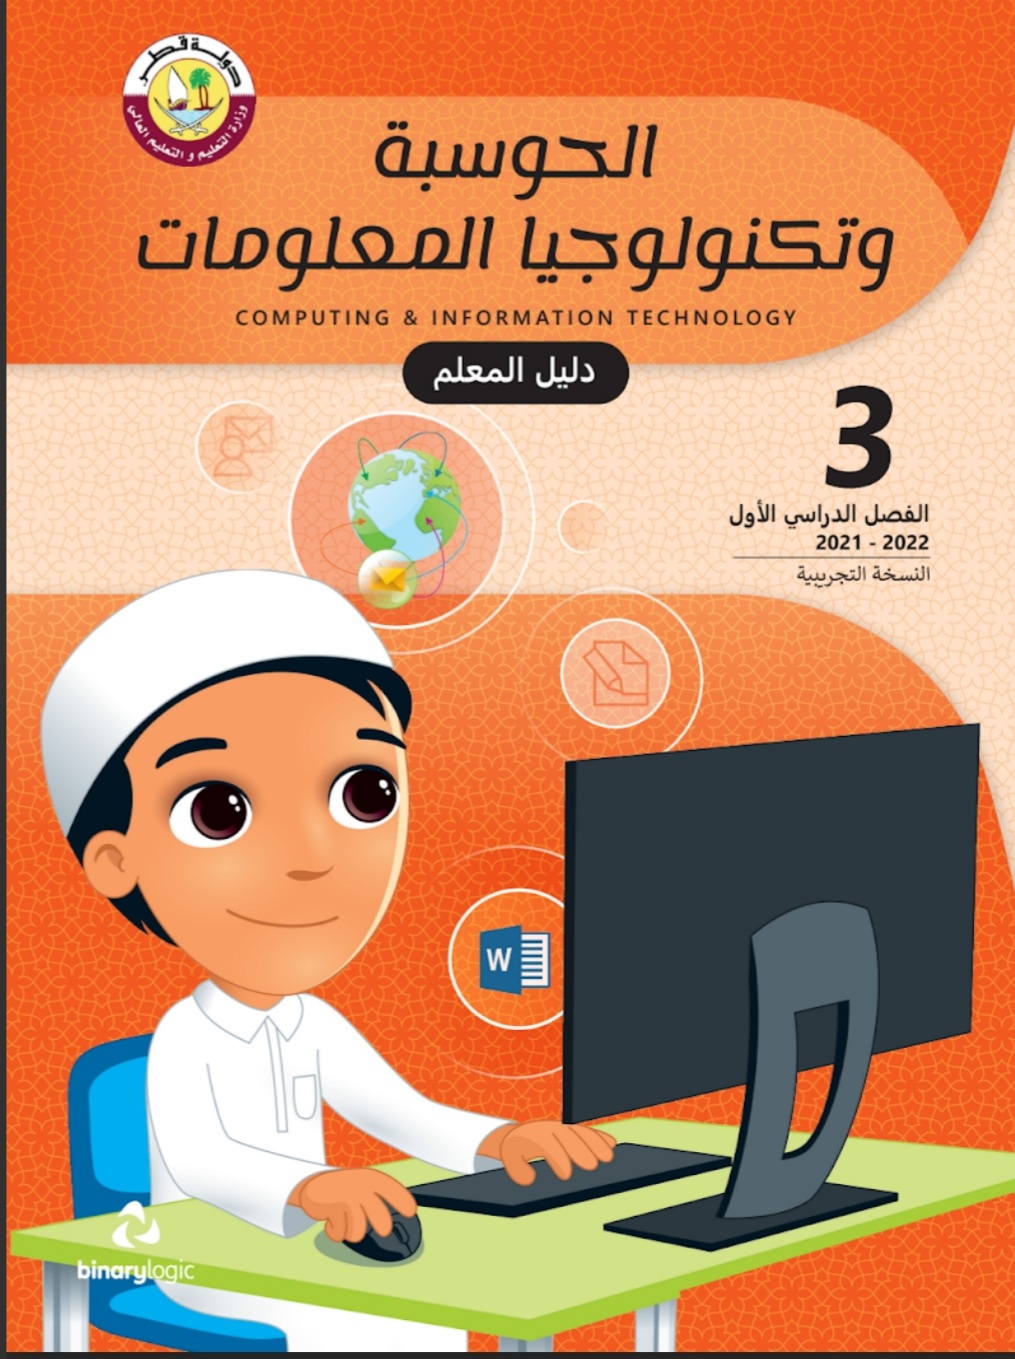 دليل معلم الحوسبة وتكنولوجيا المعلومات الثالث فصل اول منهاج قطر